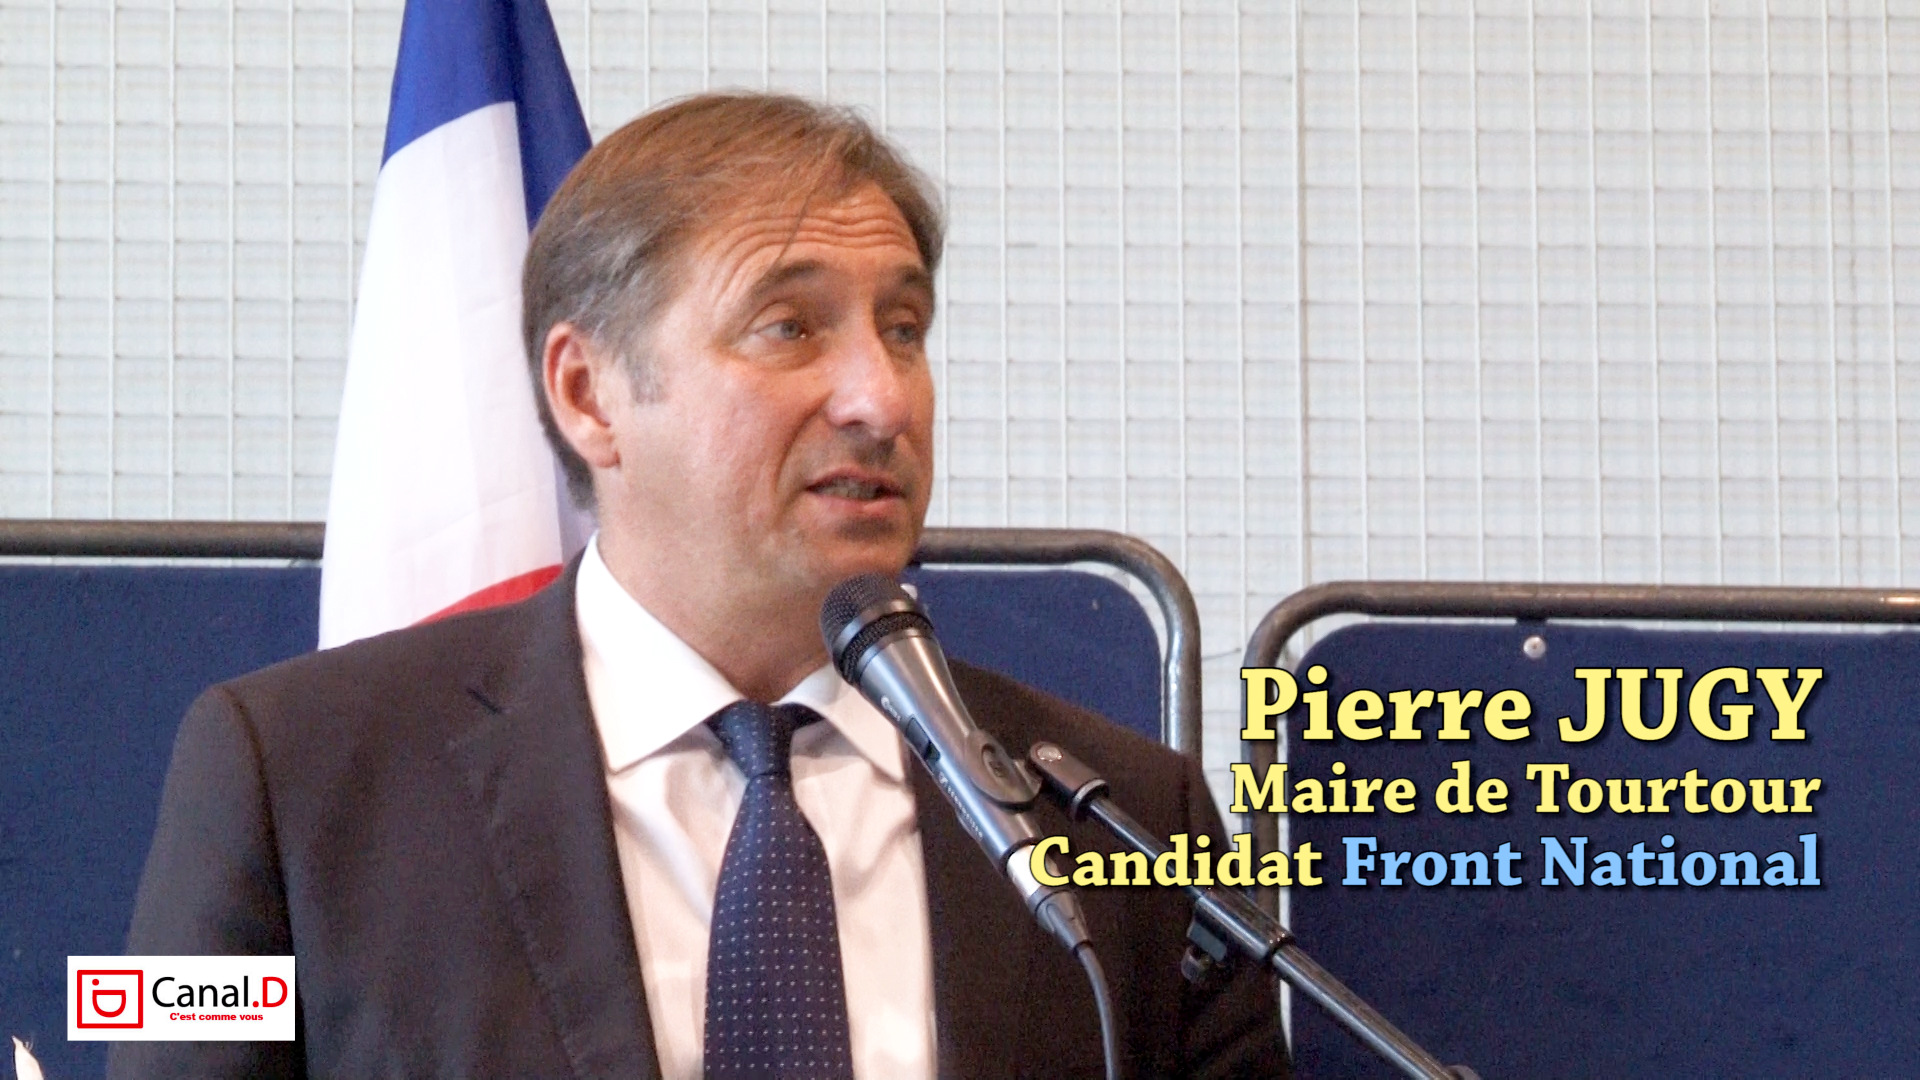 Pierre JUGY en meeting à Draguignan pour le Front National